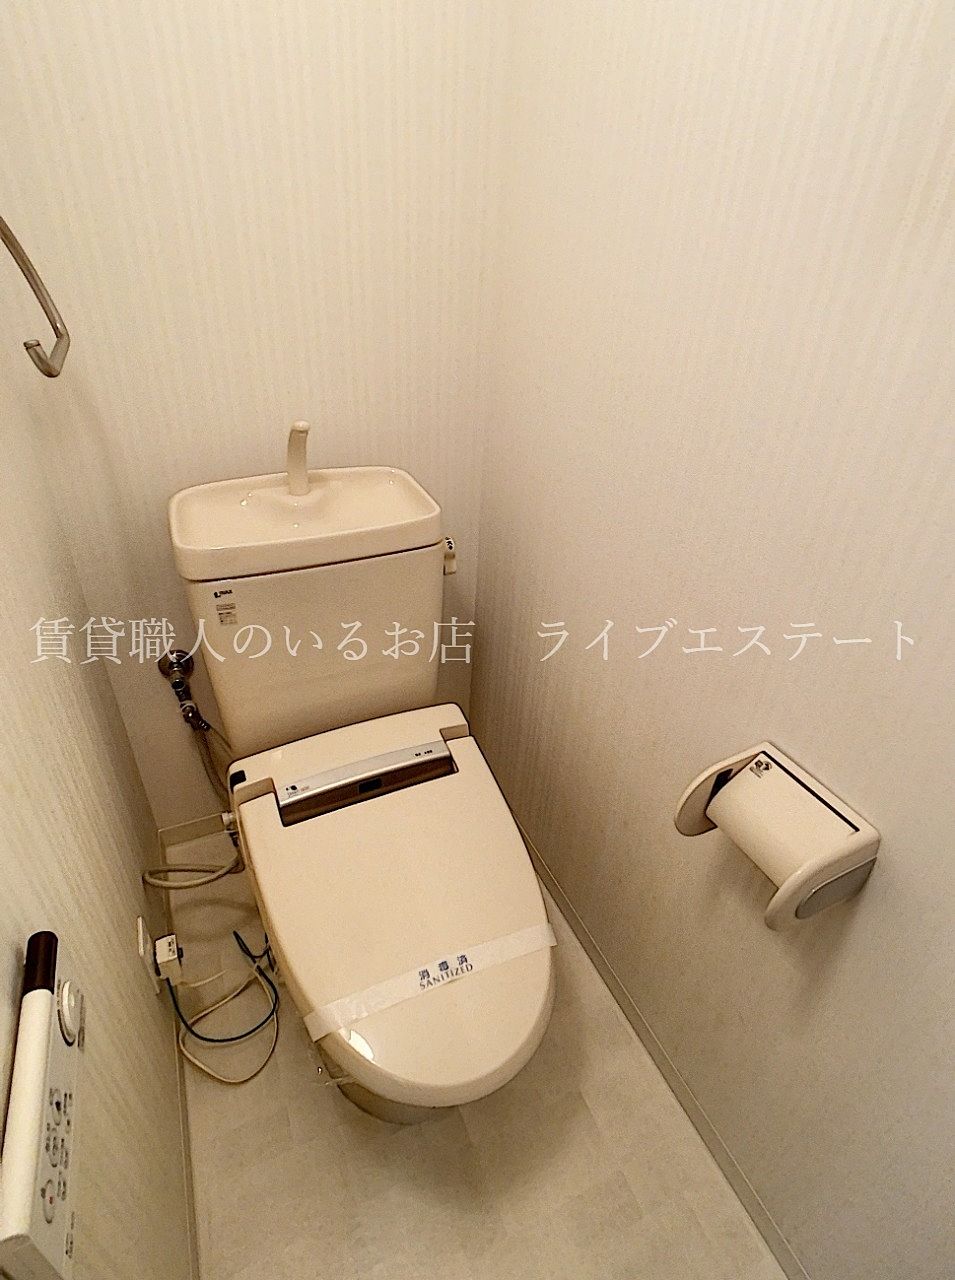 リモコンは壁についているので便座周りが広く、トイレ床の奥まで掃除しやすい